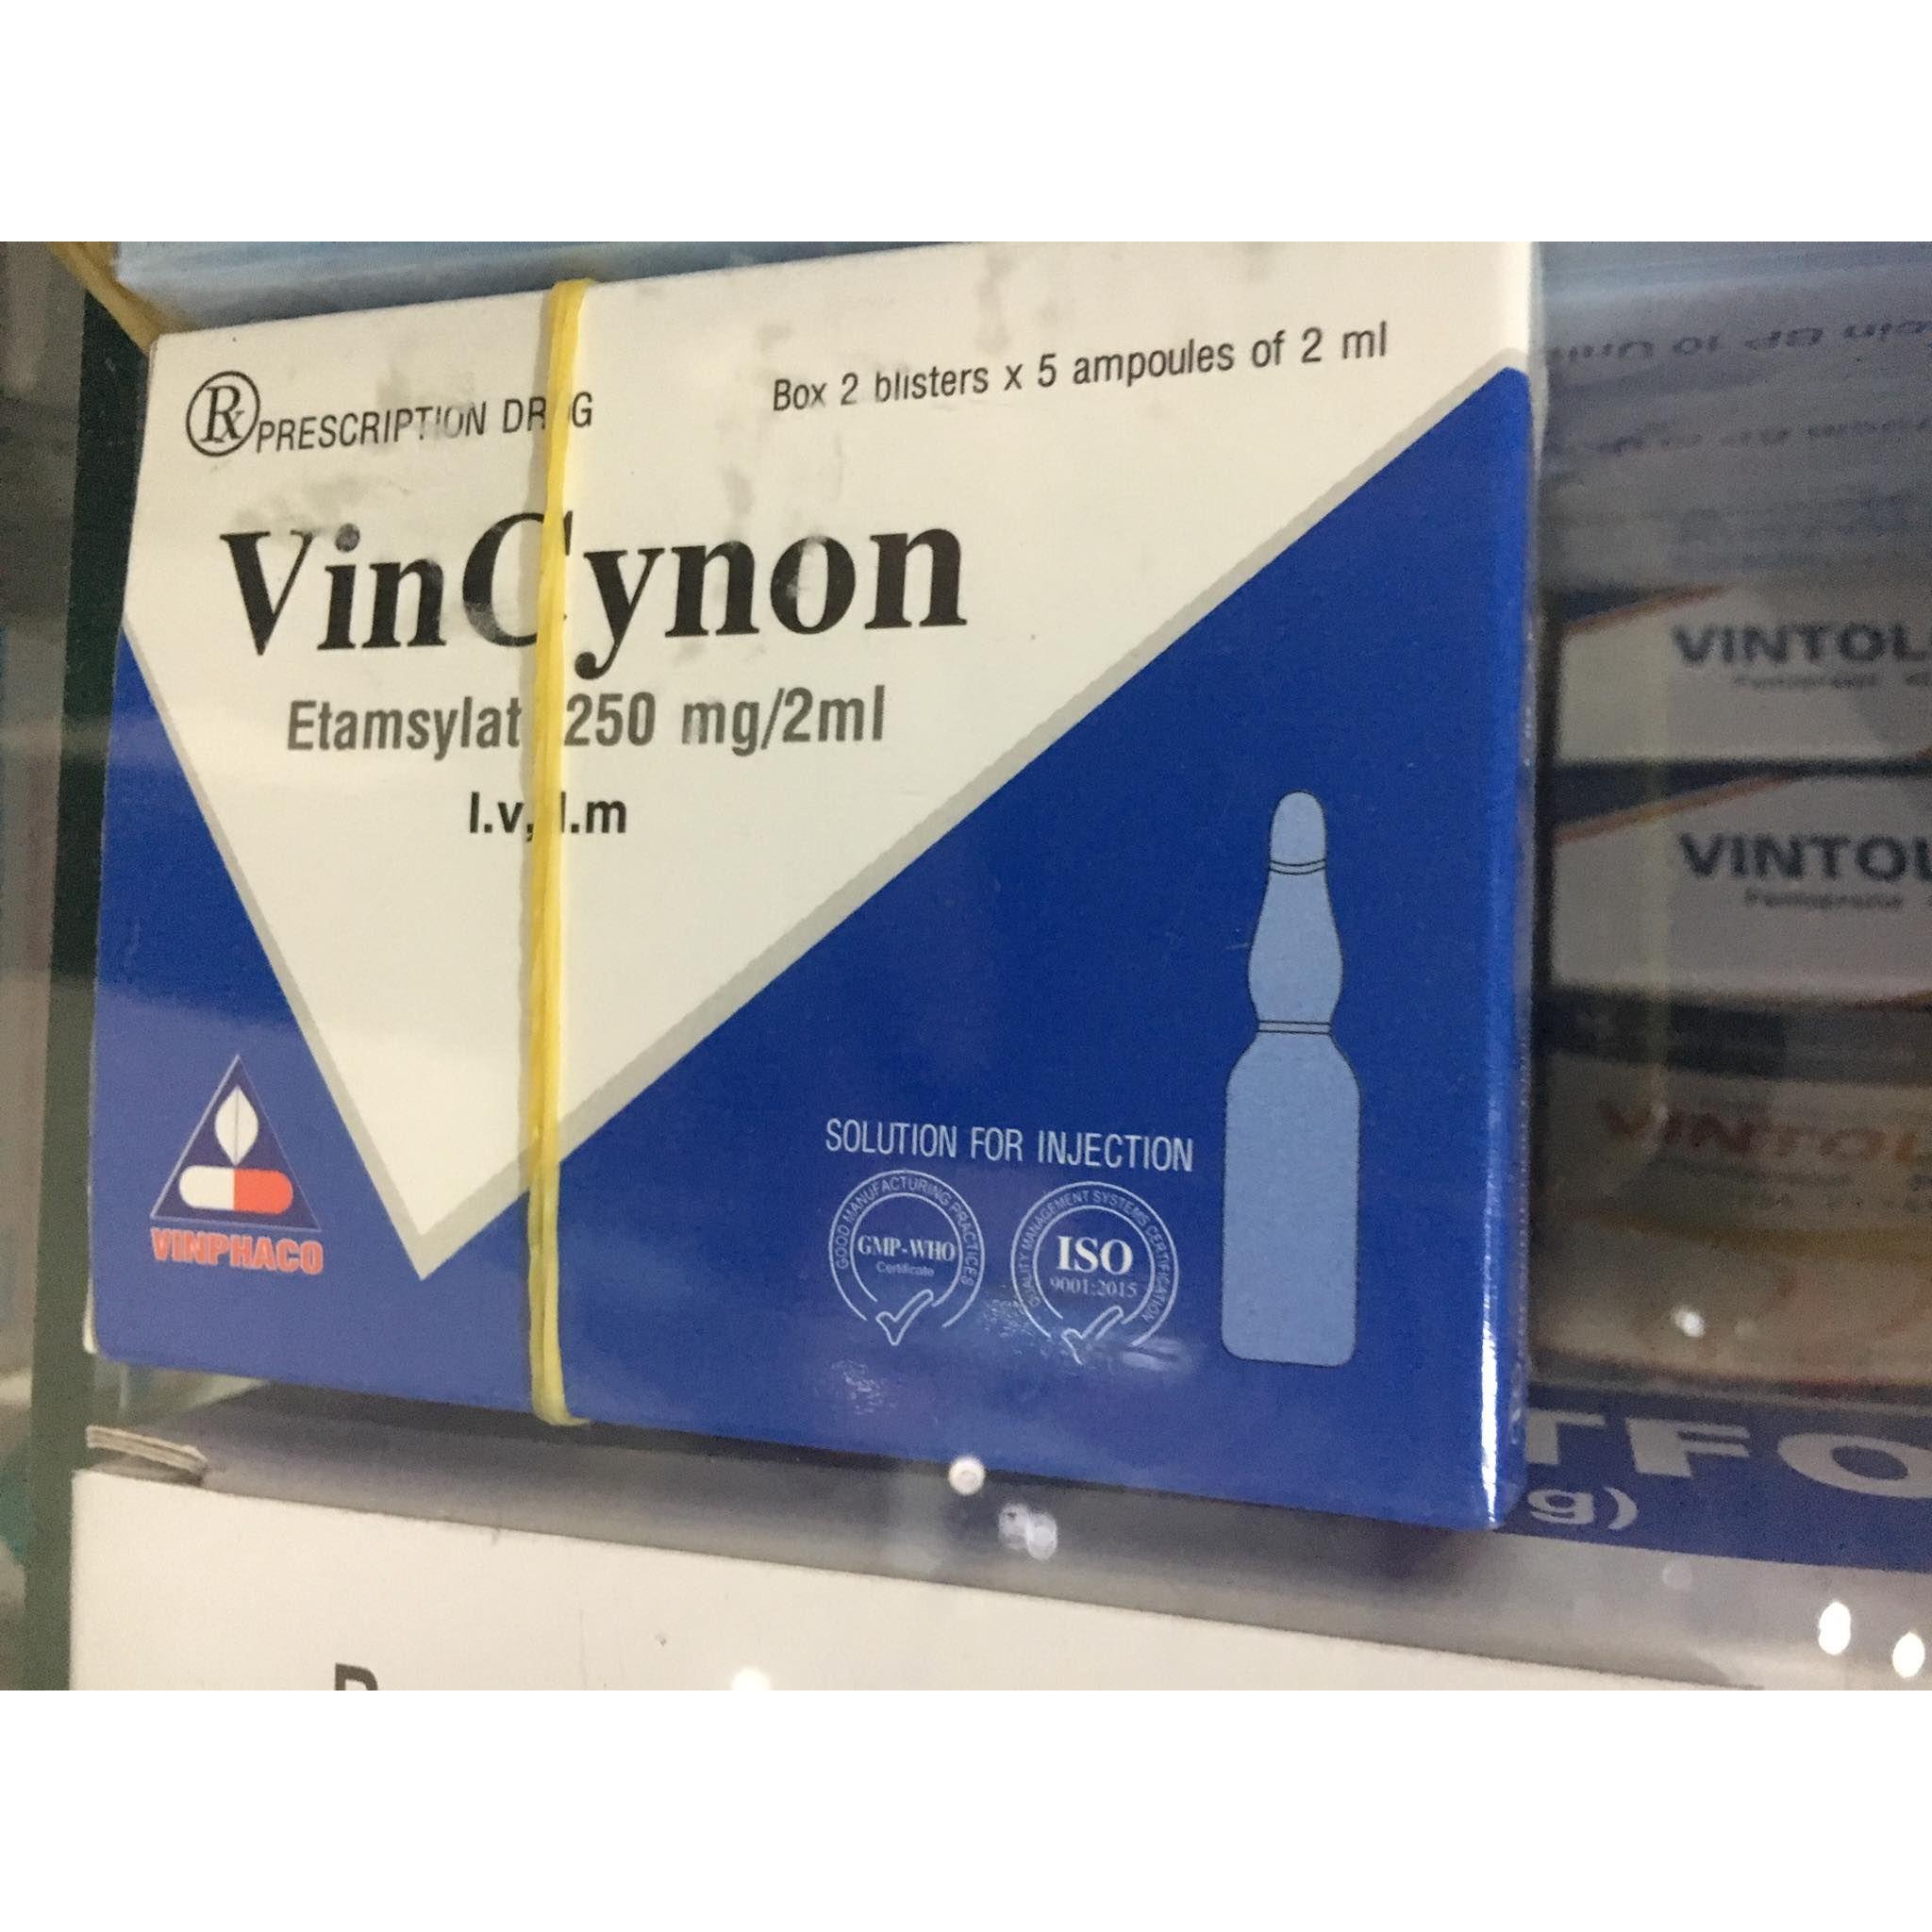 Vincynon 250mg/2ml